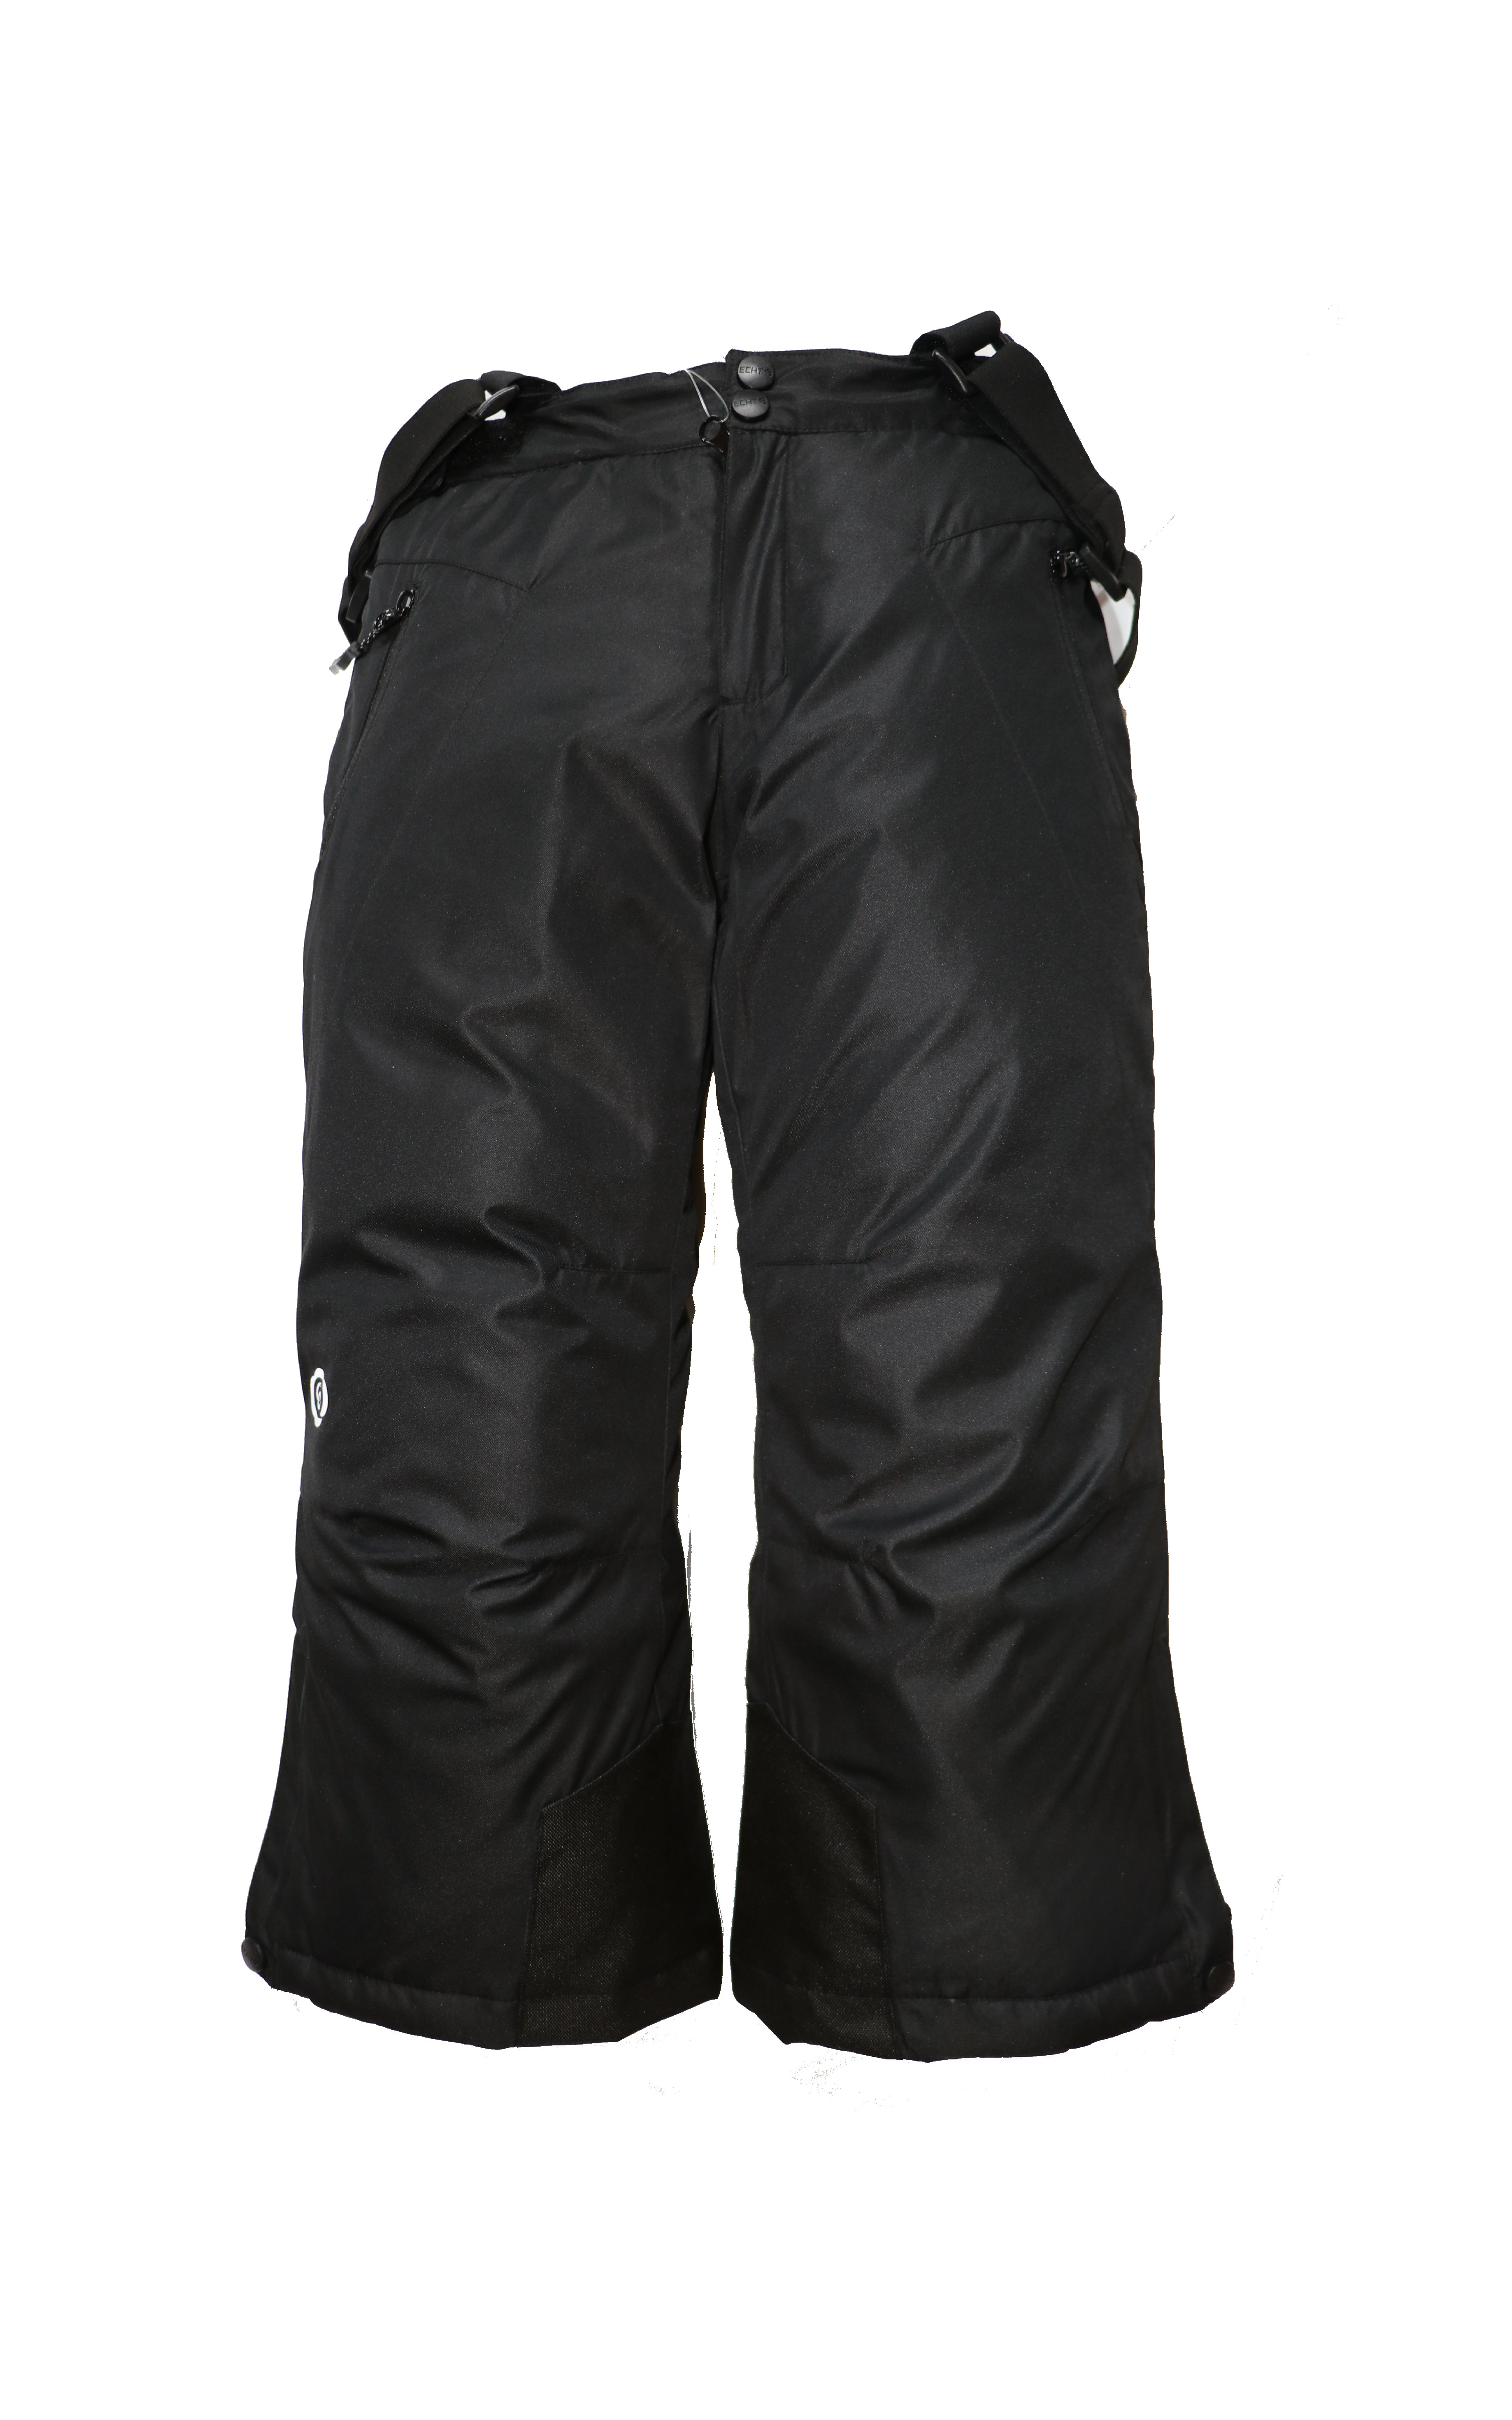 Dětské lyžařské kalhoty HB02-M1 Barva: Černa, Velikost: 128 - 134 cm